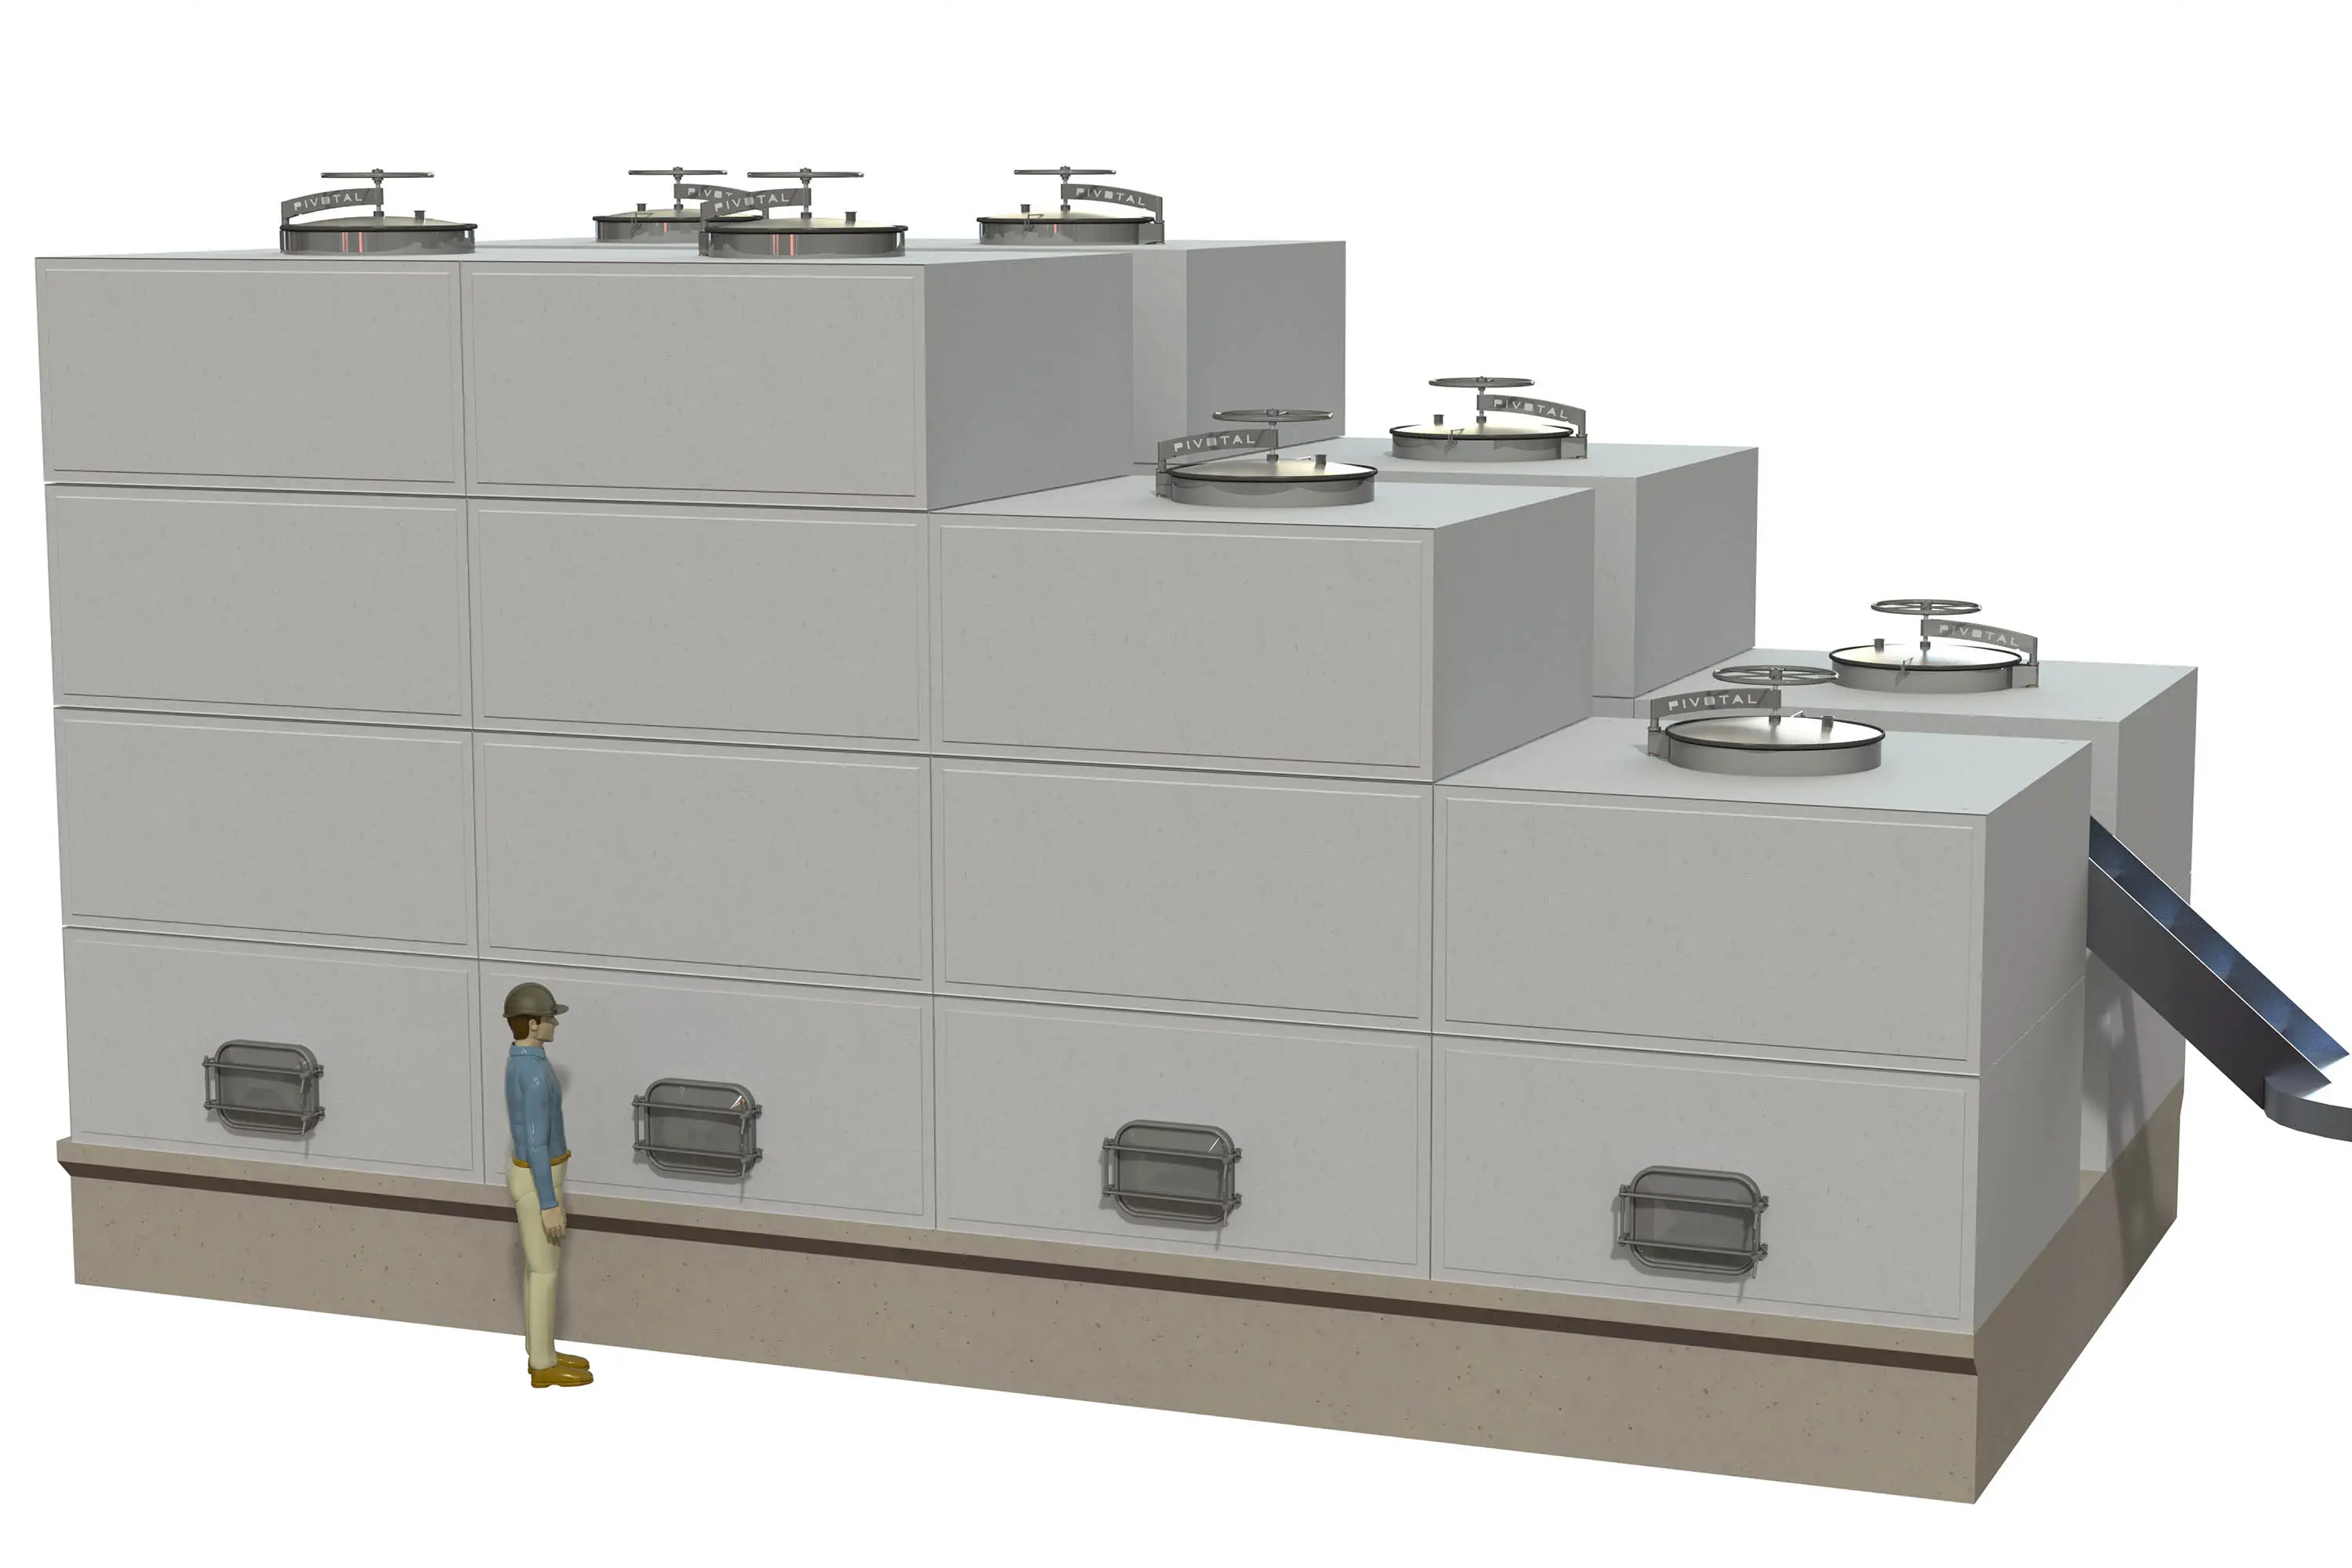 model of segment  concrete wine tanks